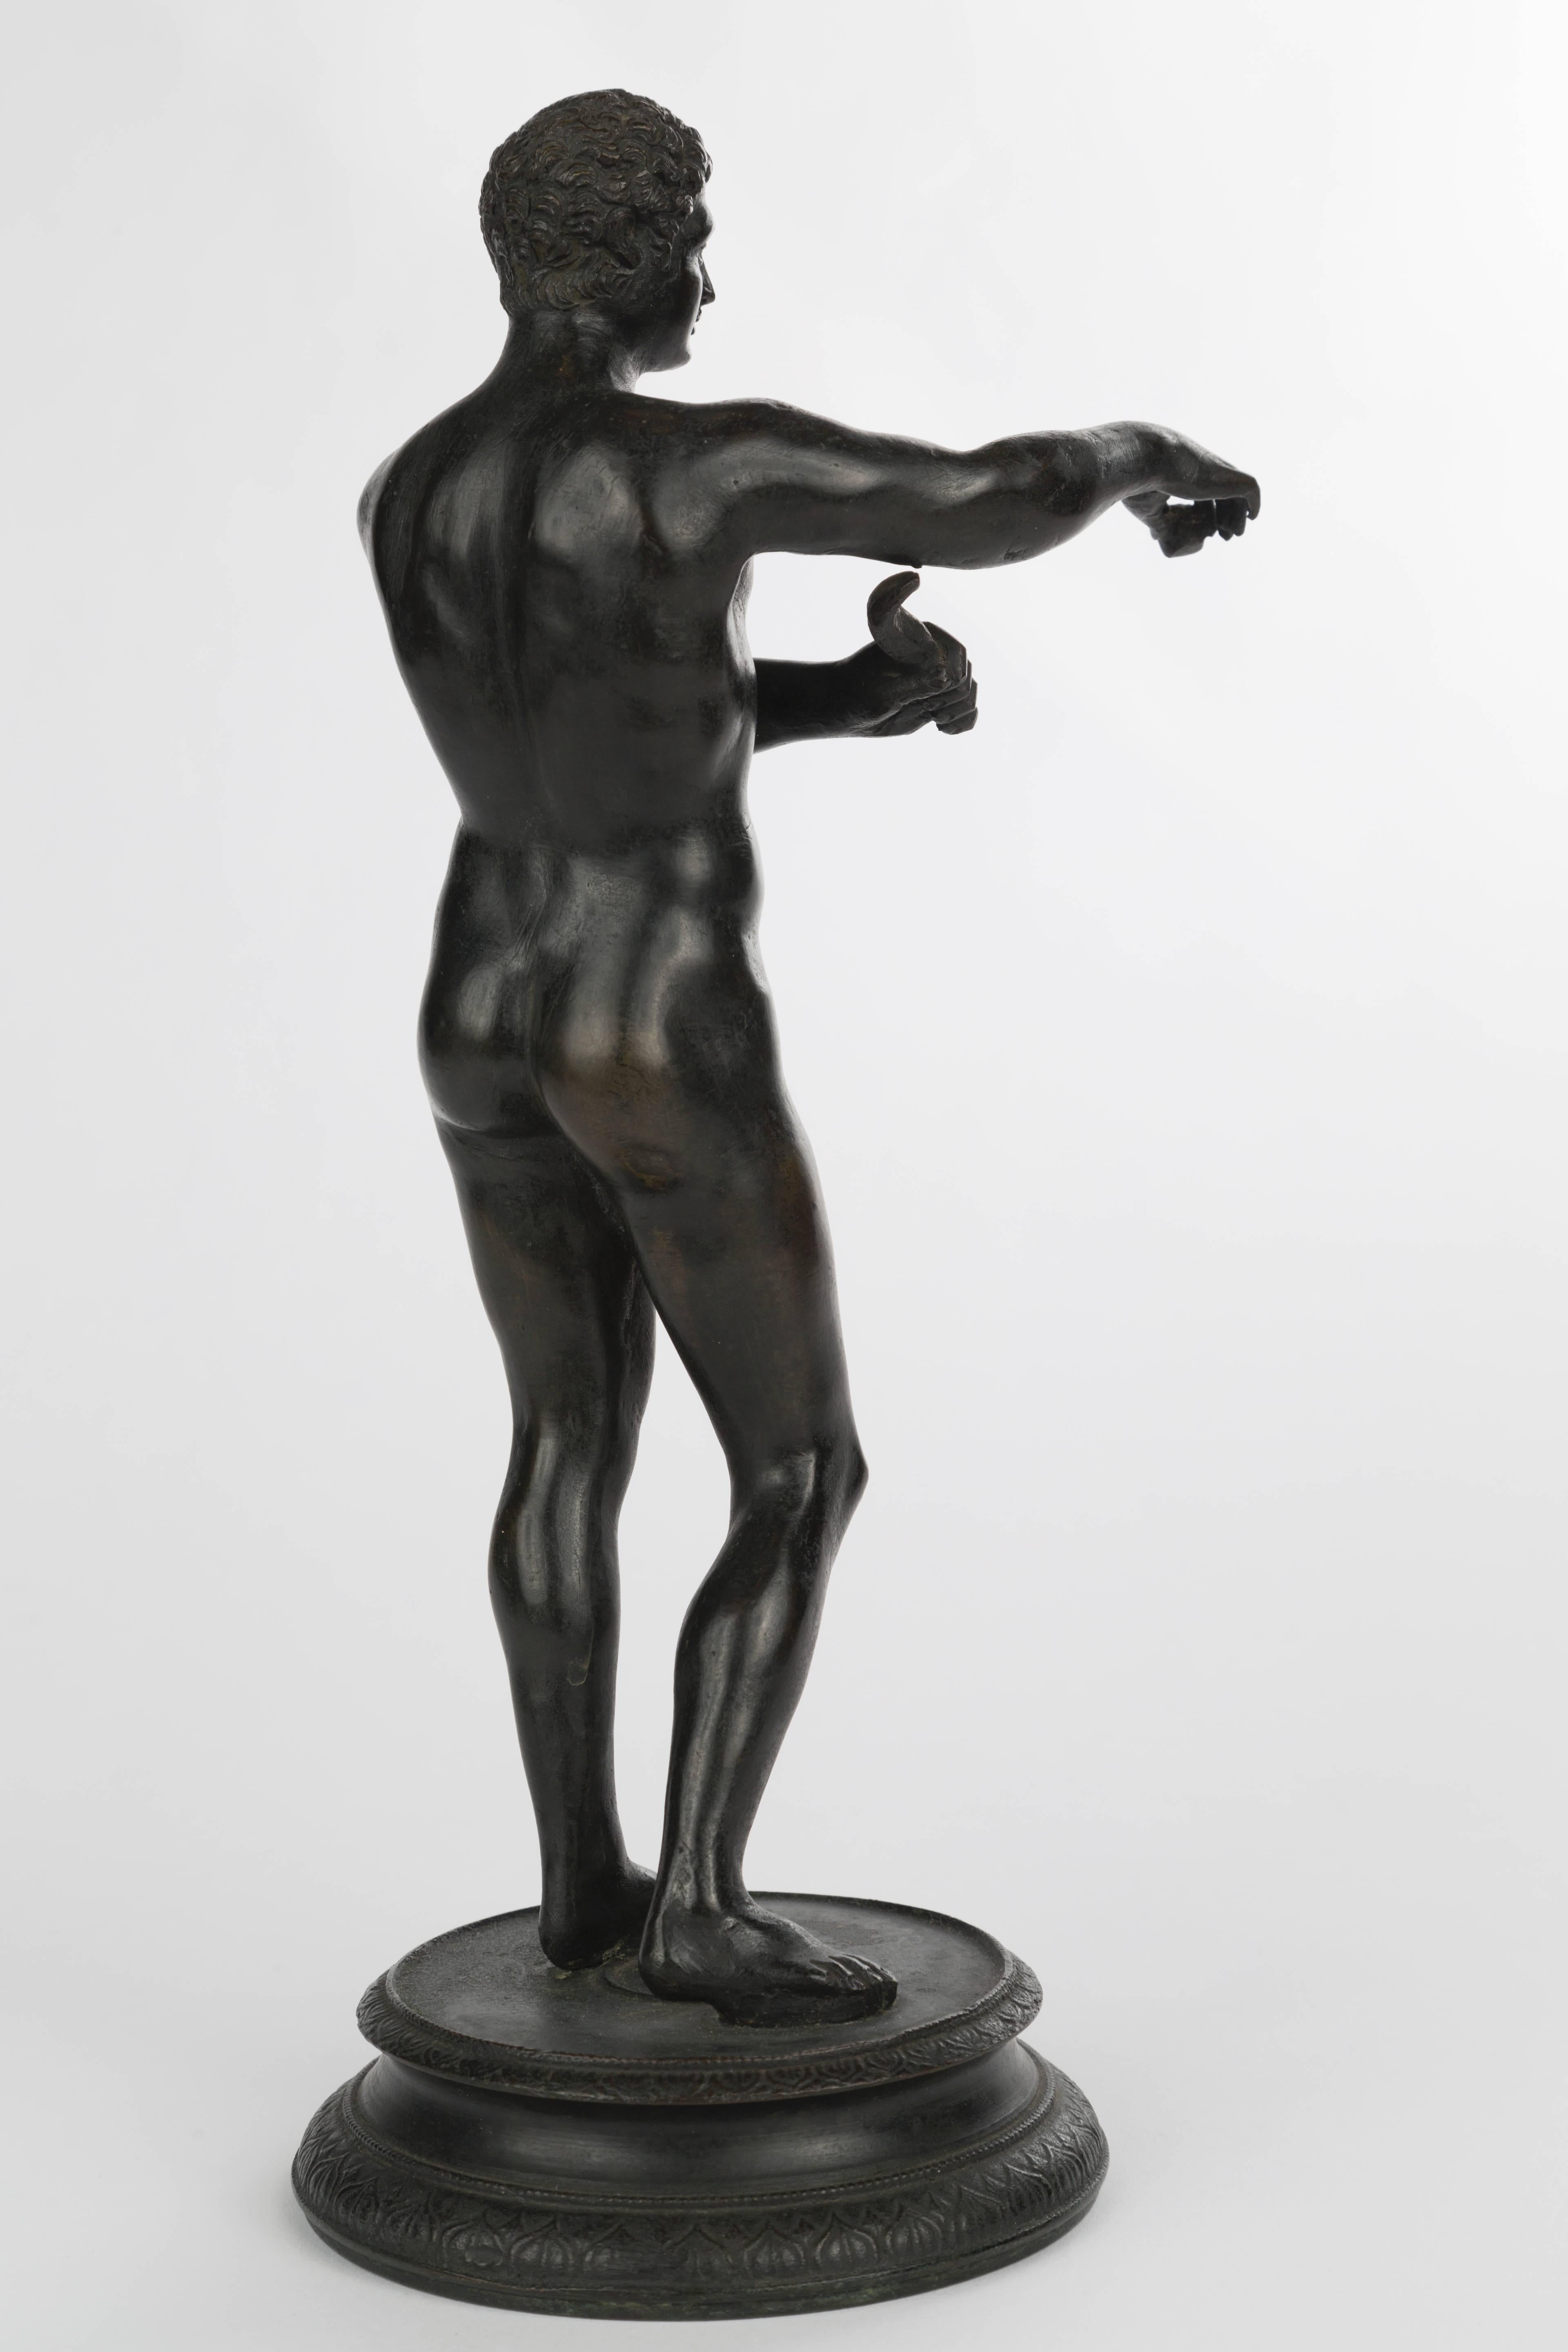 Italienische Grand Tour Bronzefigur eines Athleten, Italien, 19. Jahrhundert.
Maße: H 11,5 Zoll.